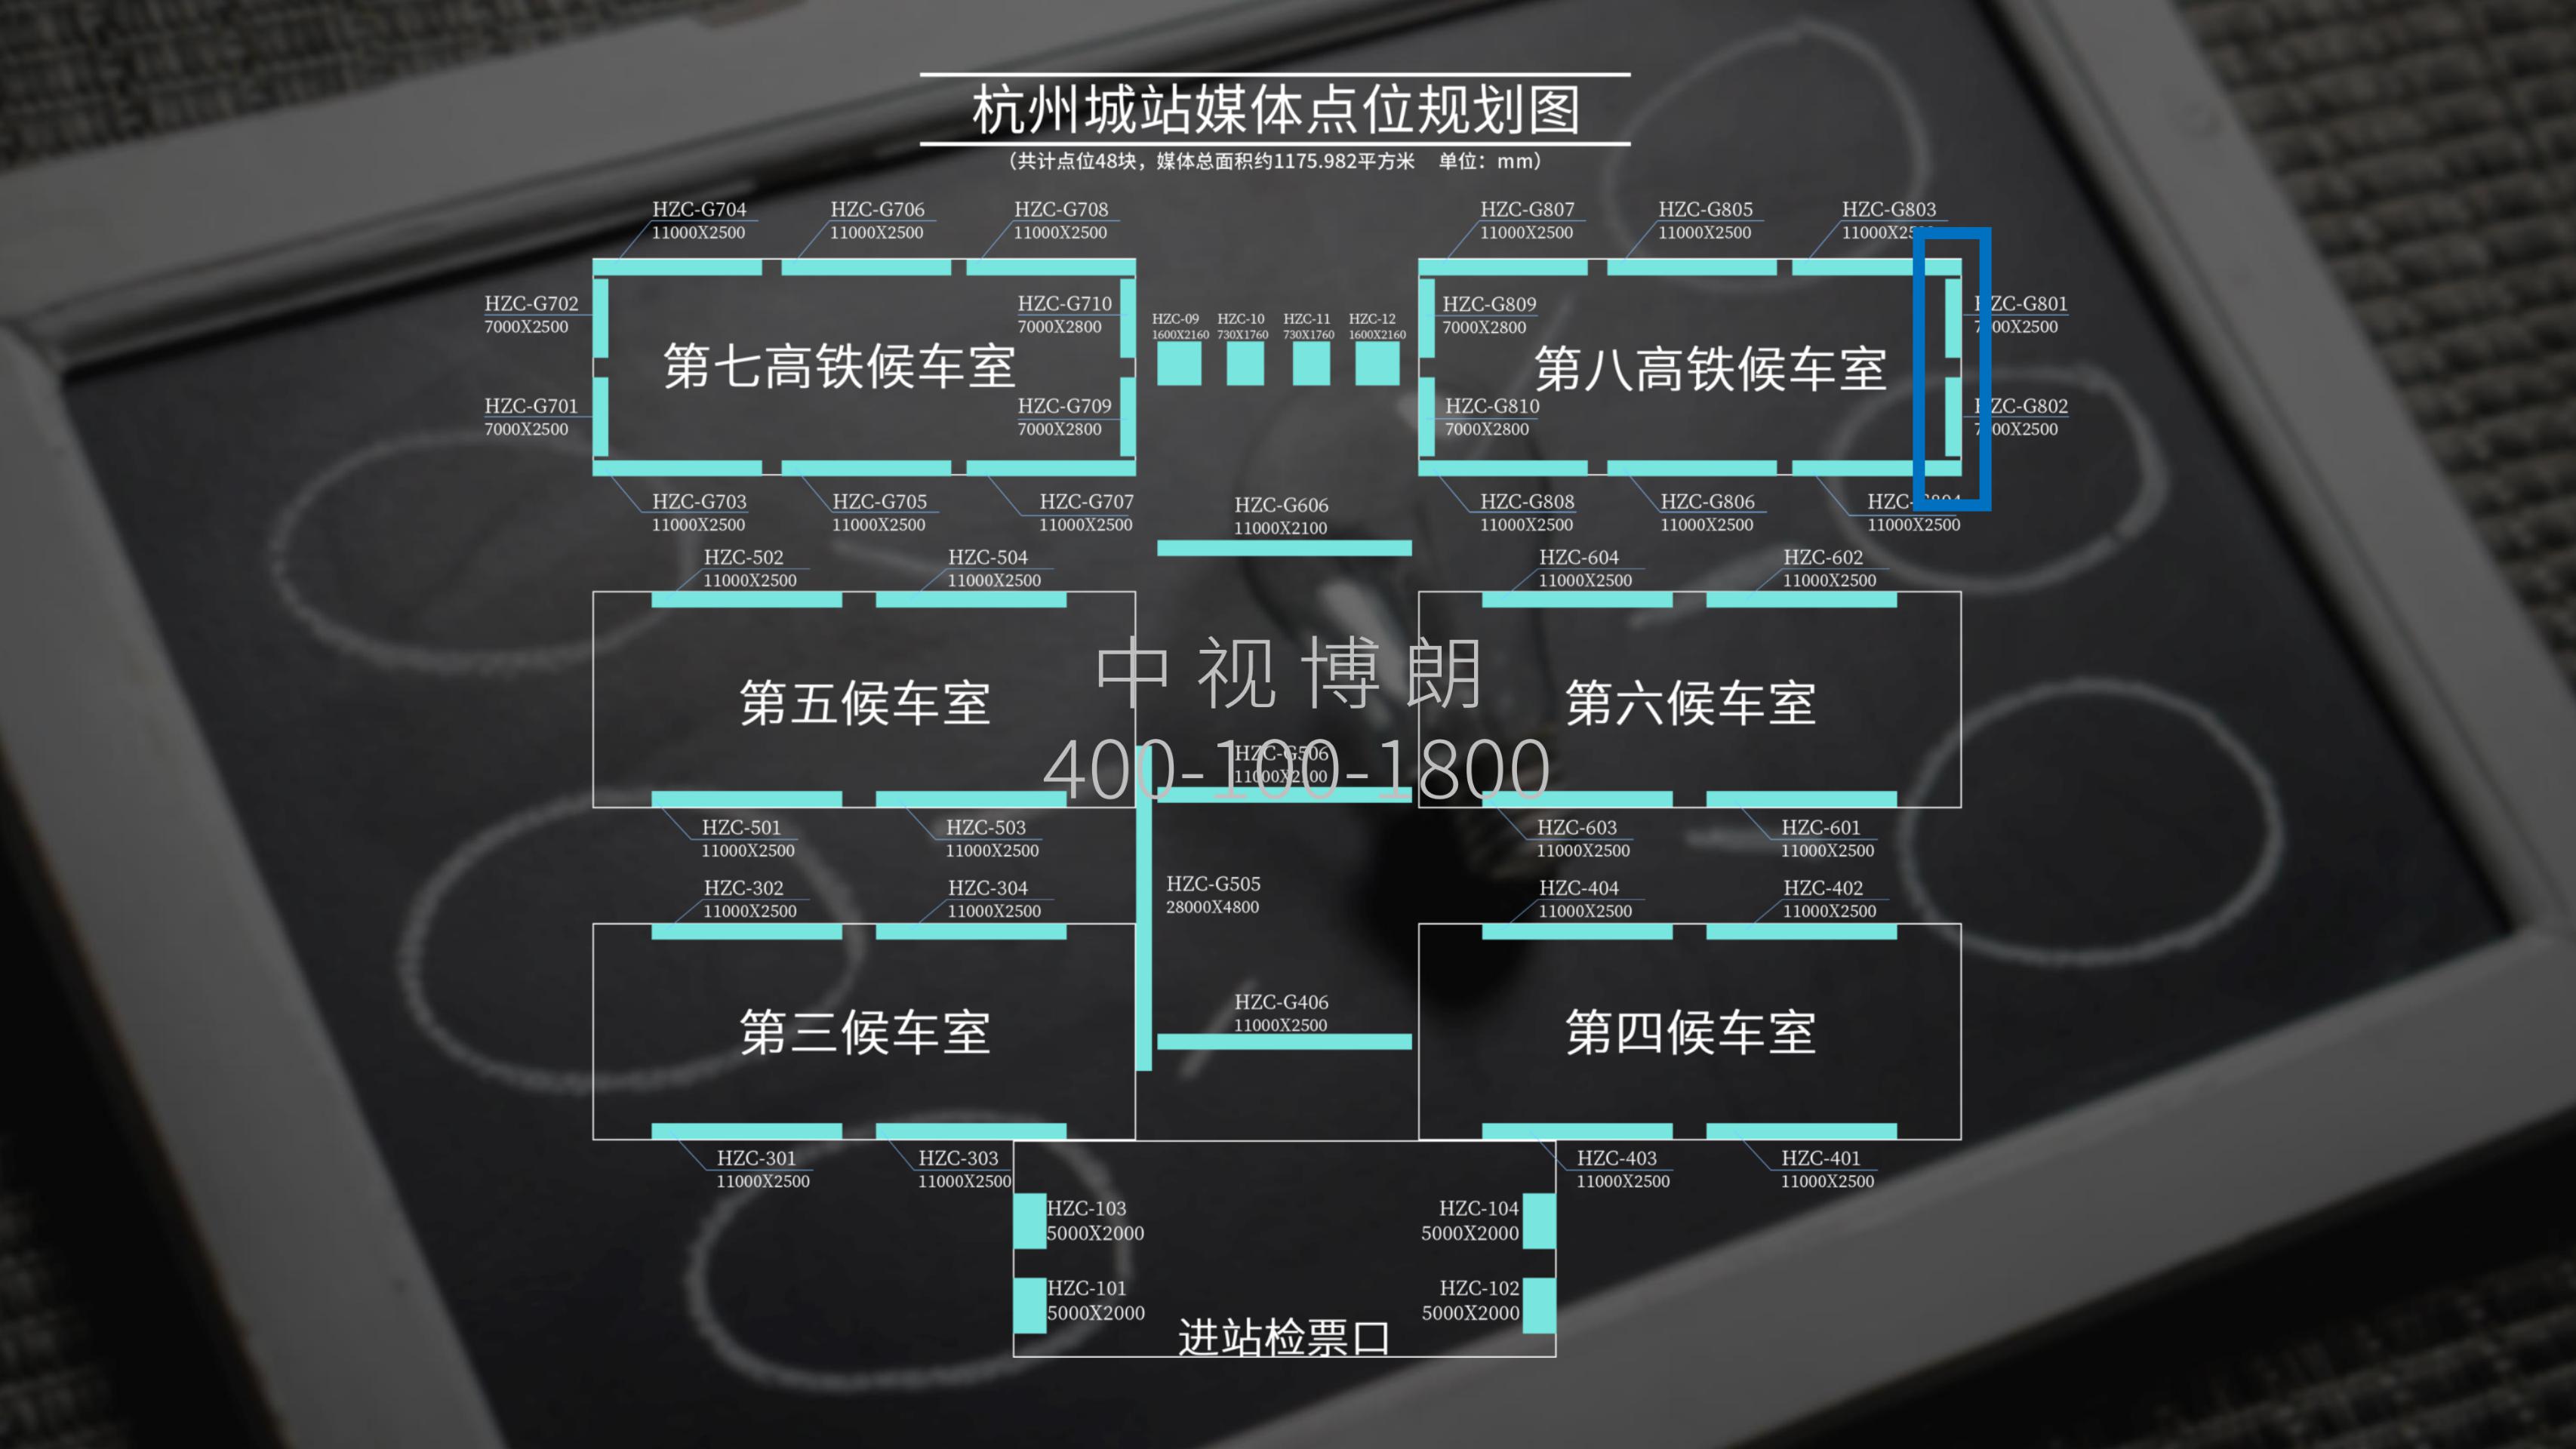 杭州站-第八候车室检票口上方灯箱点位图